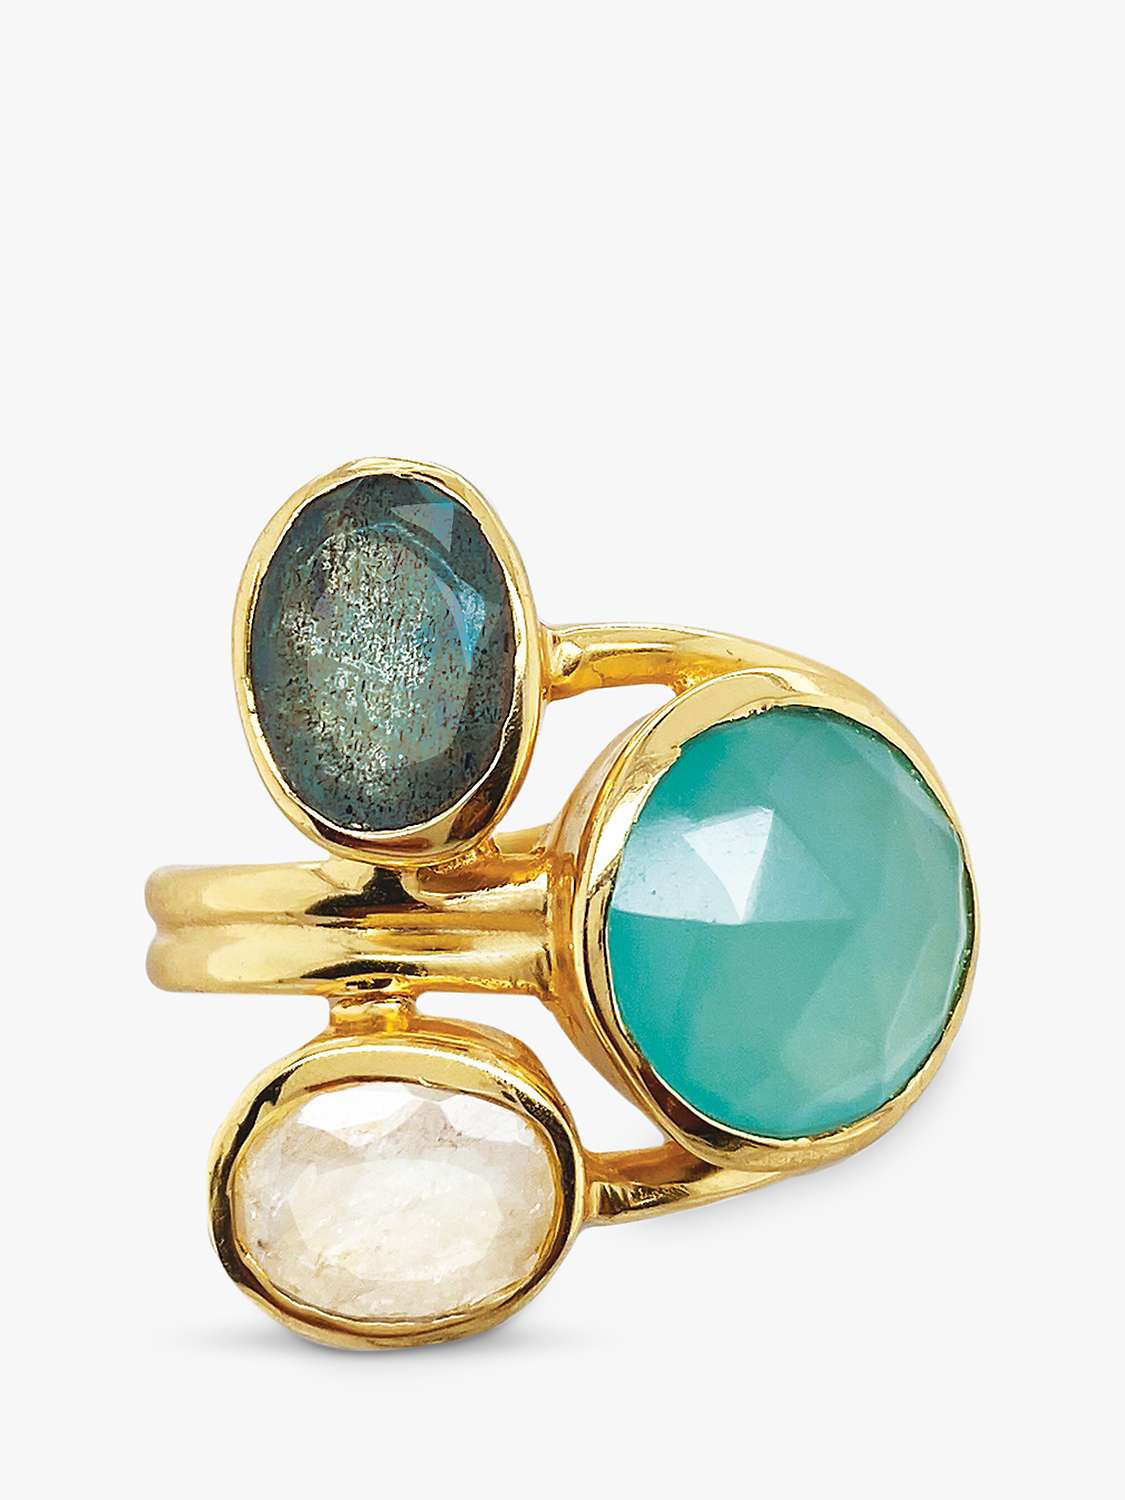 Buy Sarah Alexander Aurora Borealis Triple Gemstone Ring, Gold Online at johnlewis.com